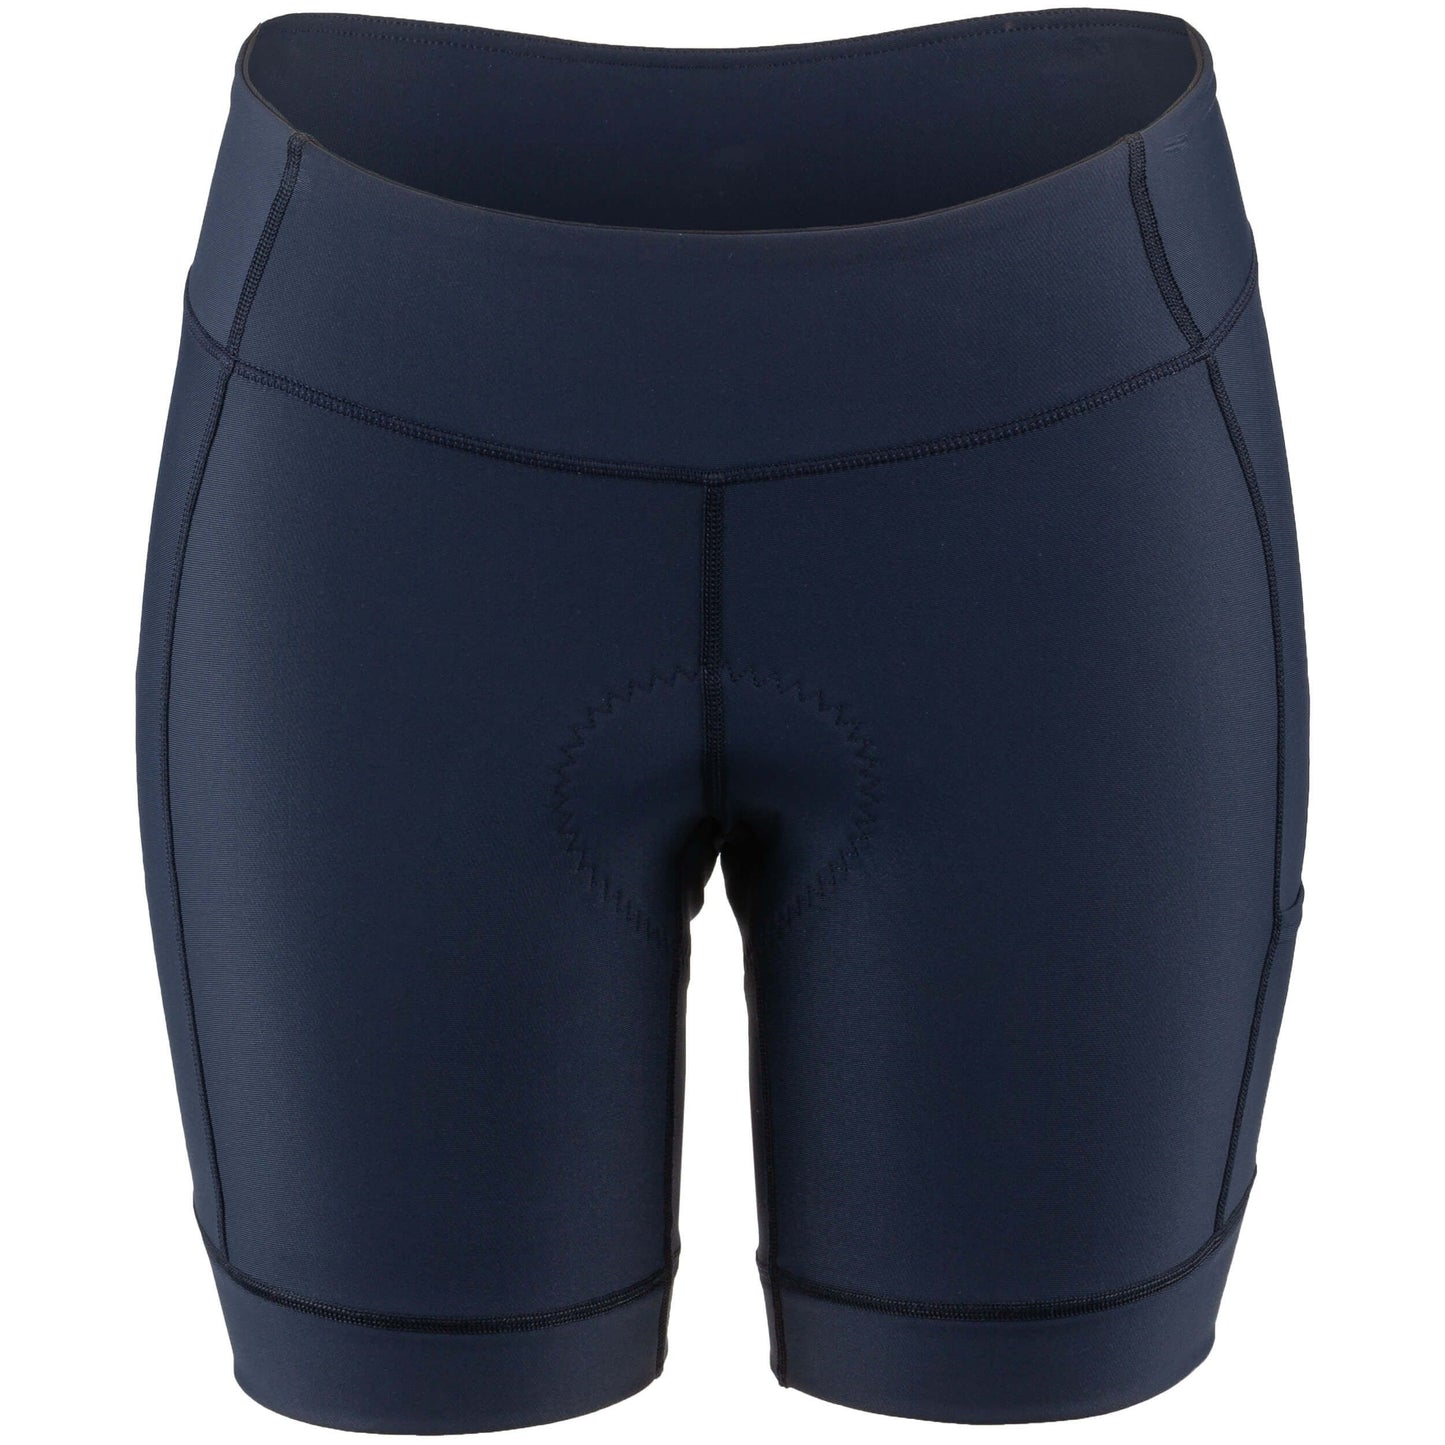 Women's Fit Sensor 7.5 Shorts 2 by Louis Garneau